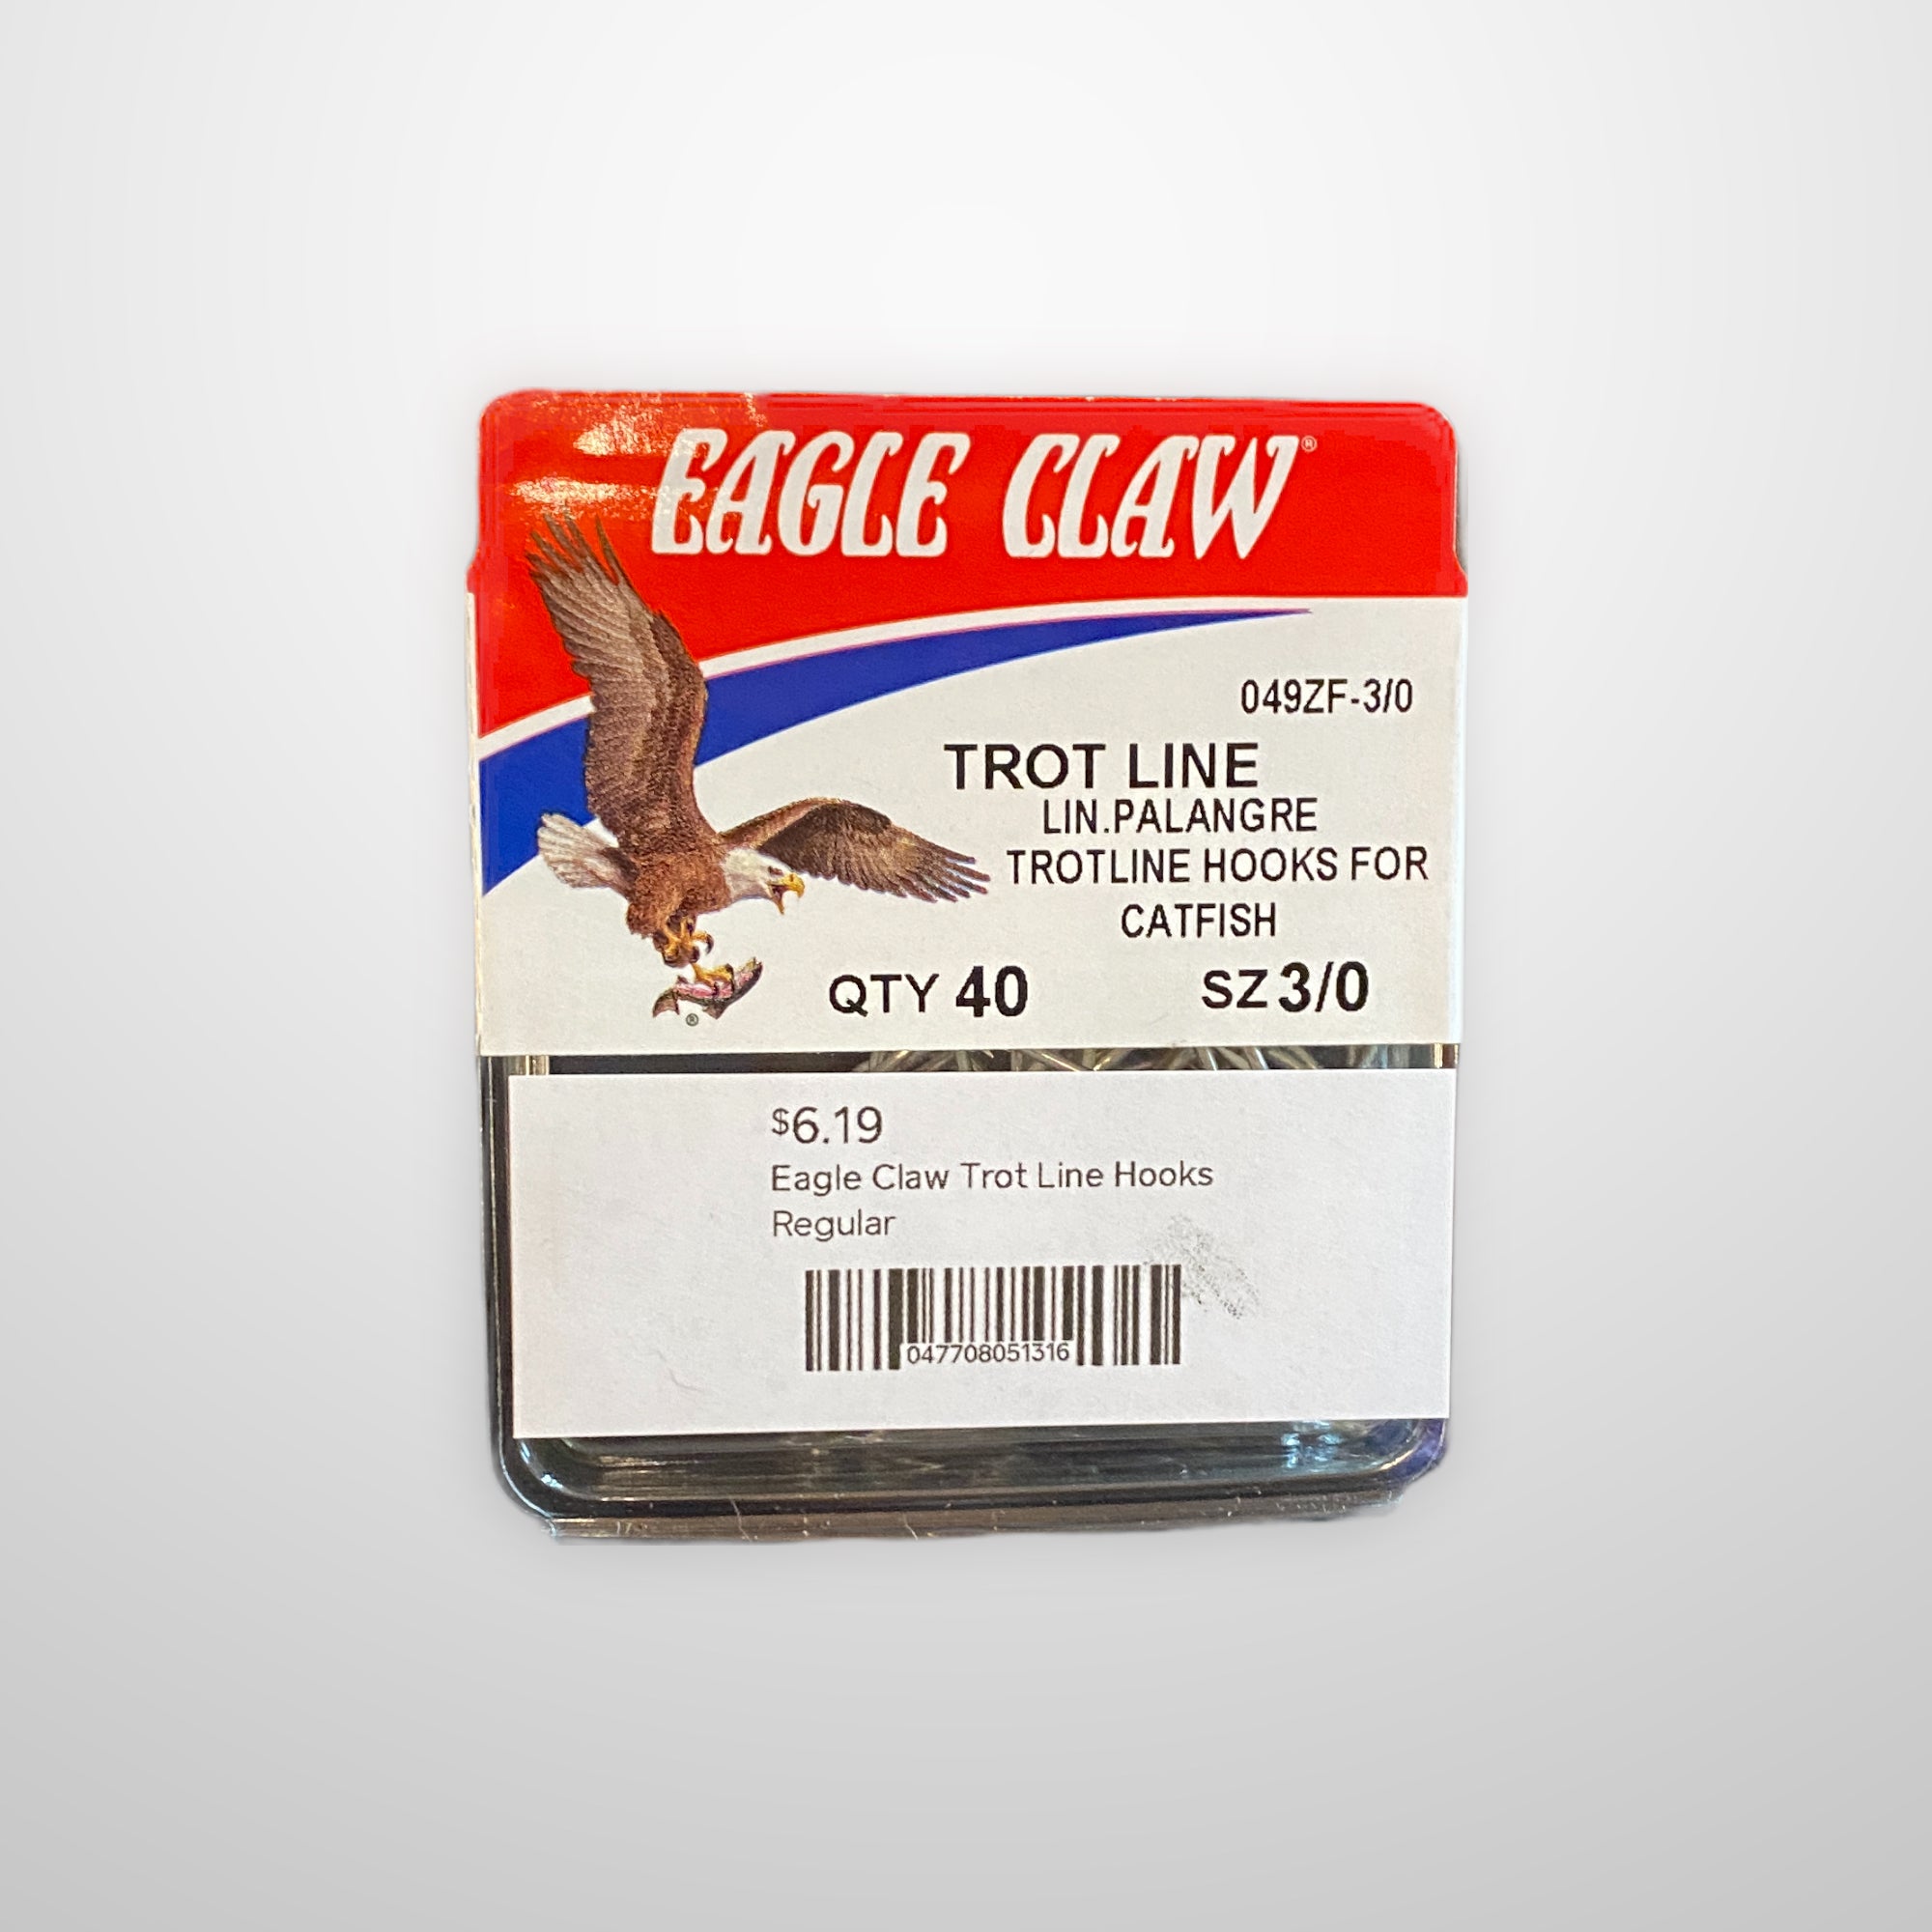 Eagle Claw Trot Line Hooks  Kent Point Marina & Seafood